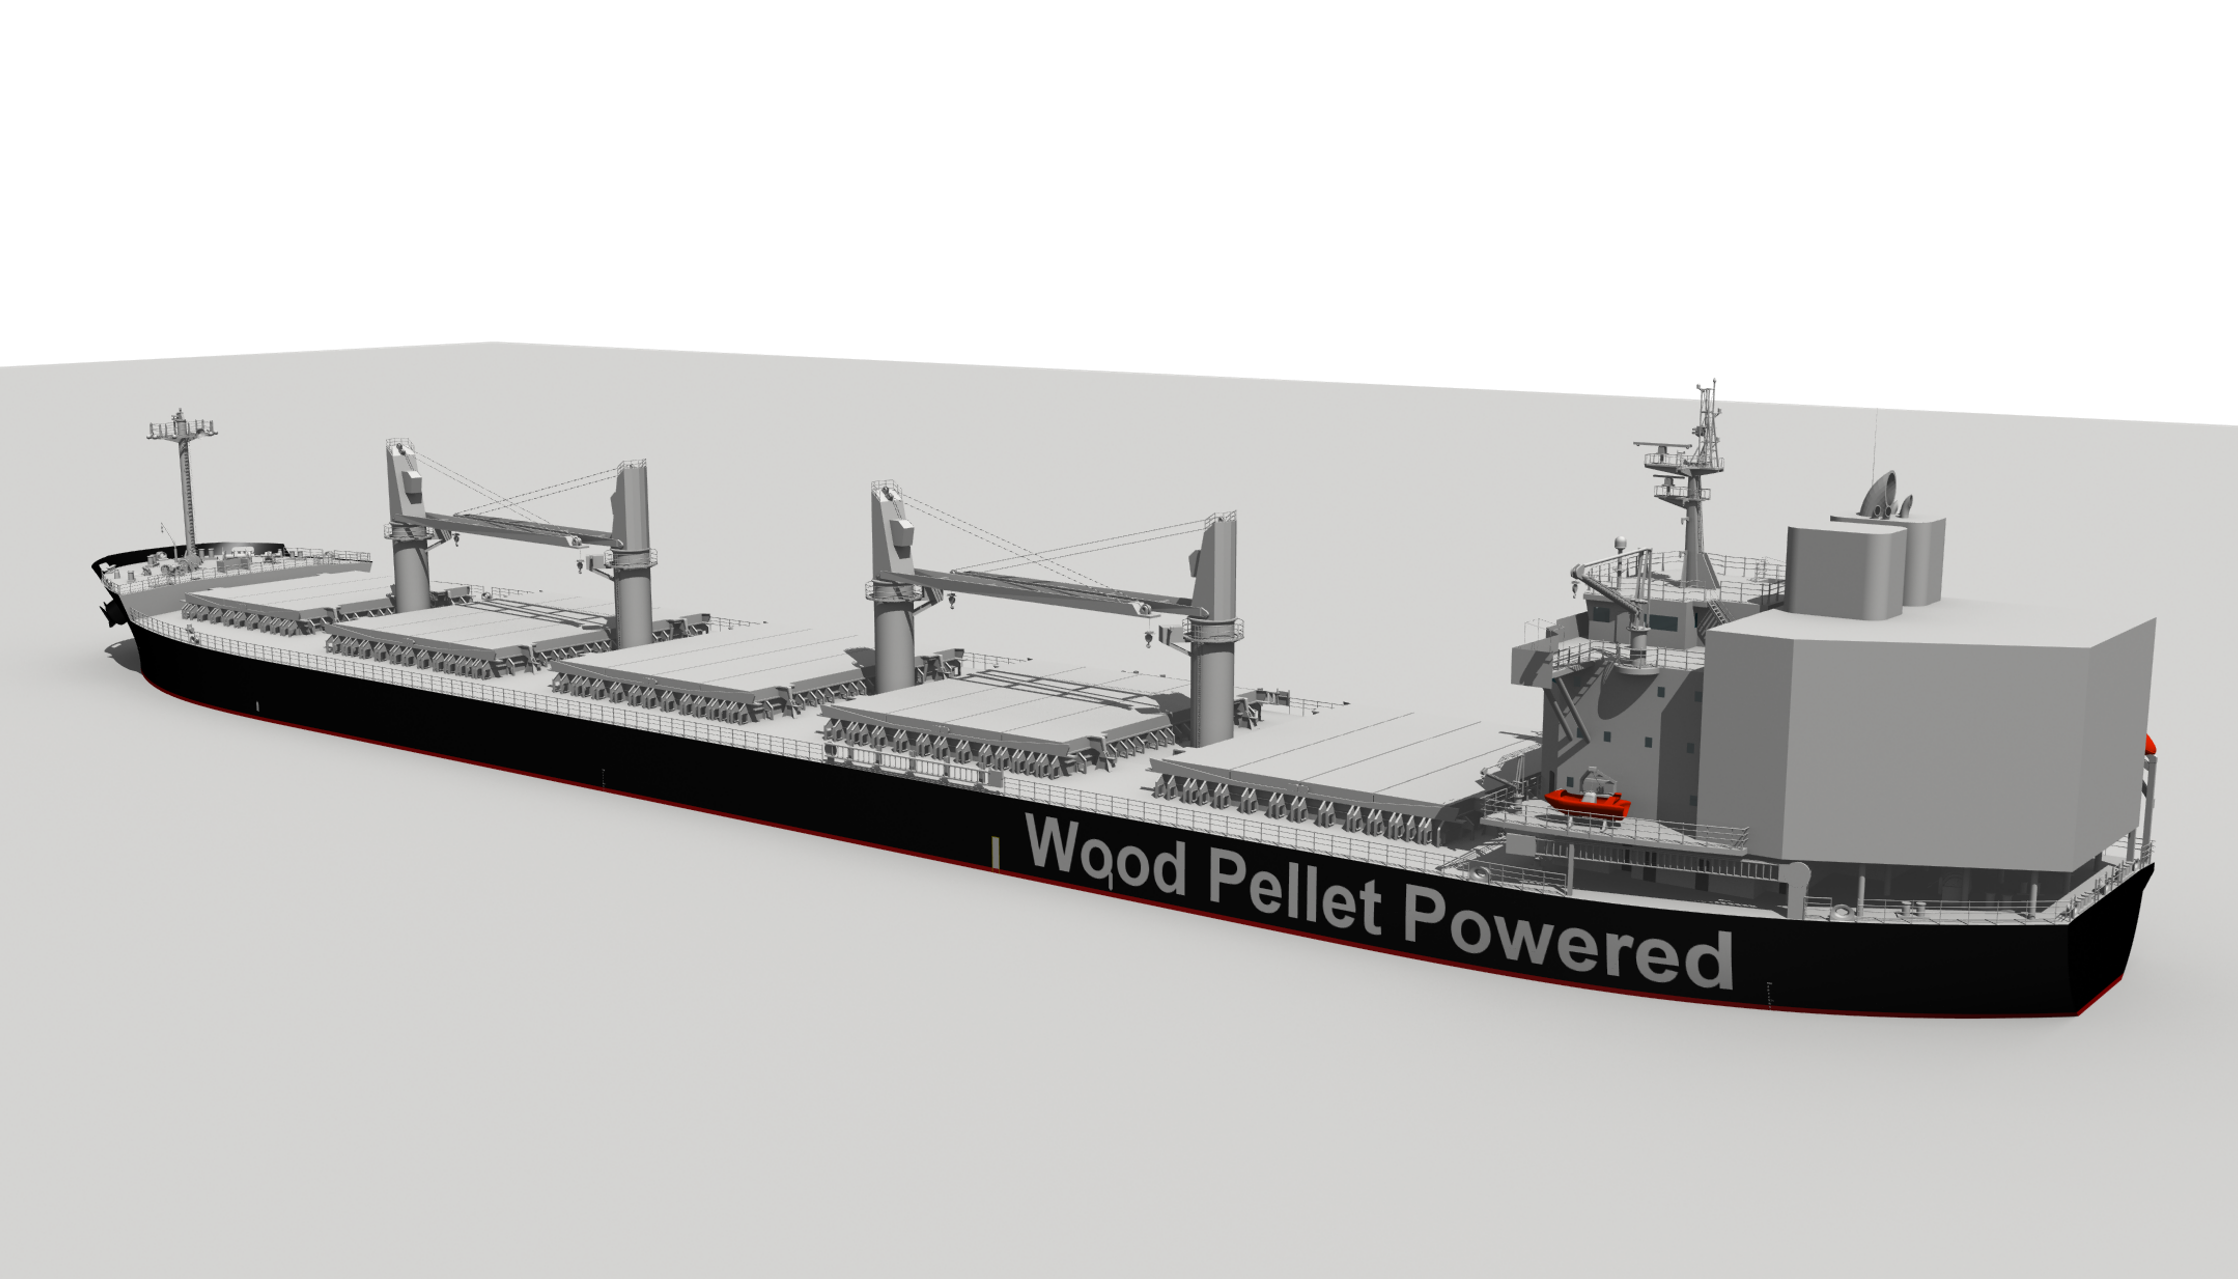 Wyjątkowy projekt NYK - statek napędzany biomasą roślinnego pochodzenia